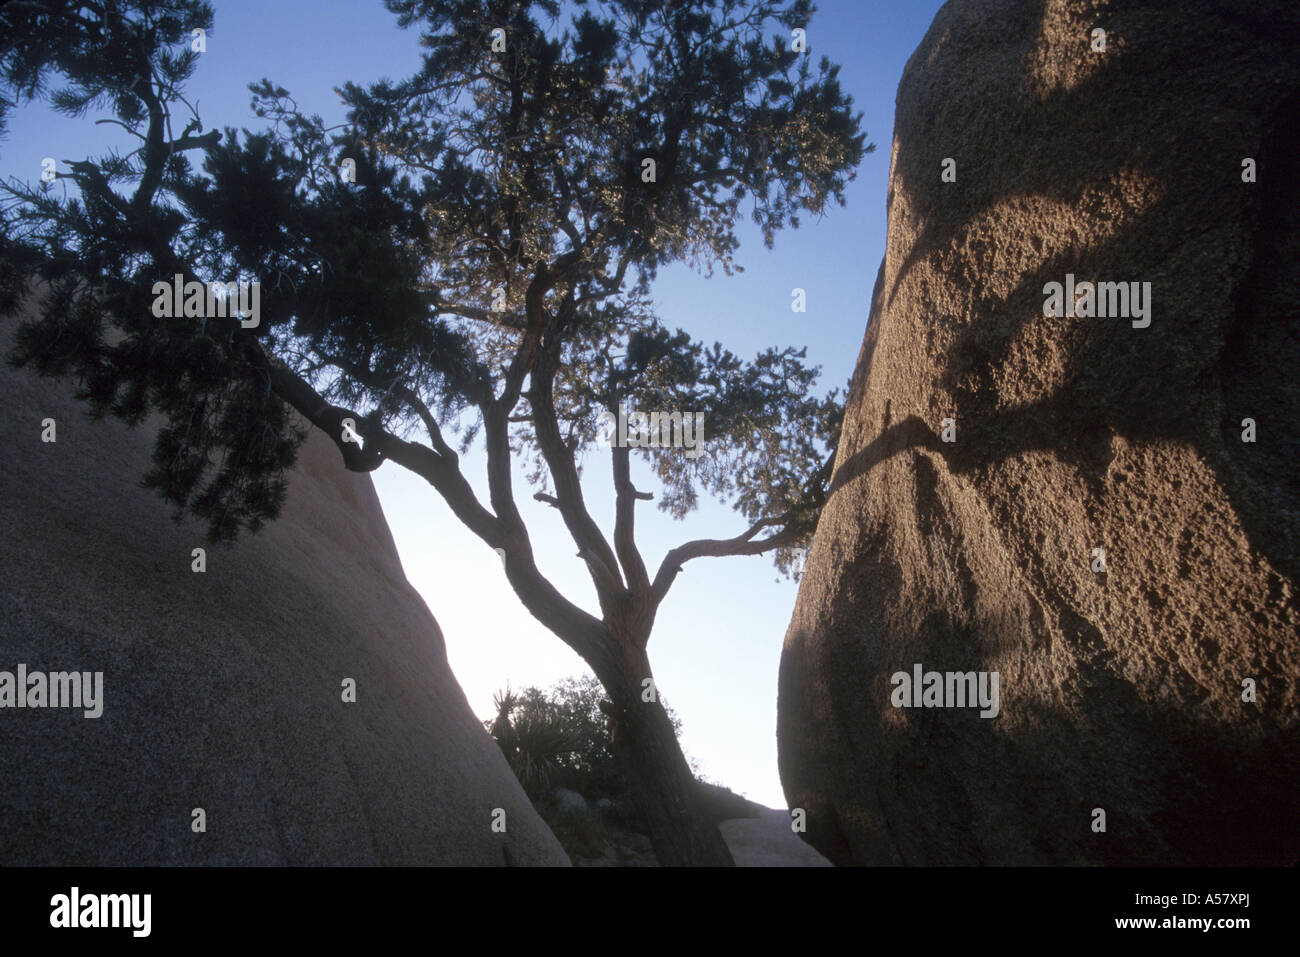 Painet ha2031 4104 Rock formationen Joshua Tree Nationalpark Kalifornien Usa Land entwickeln Nation wirtschaftlich entwickelt Stockfoto